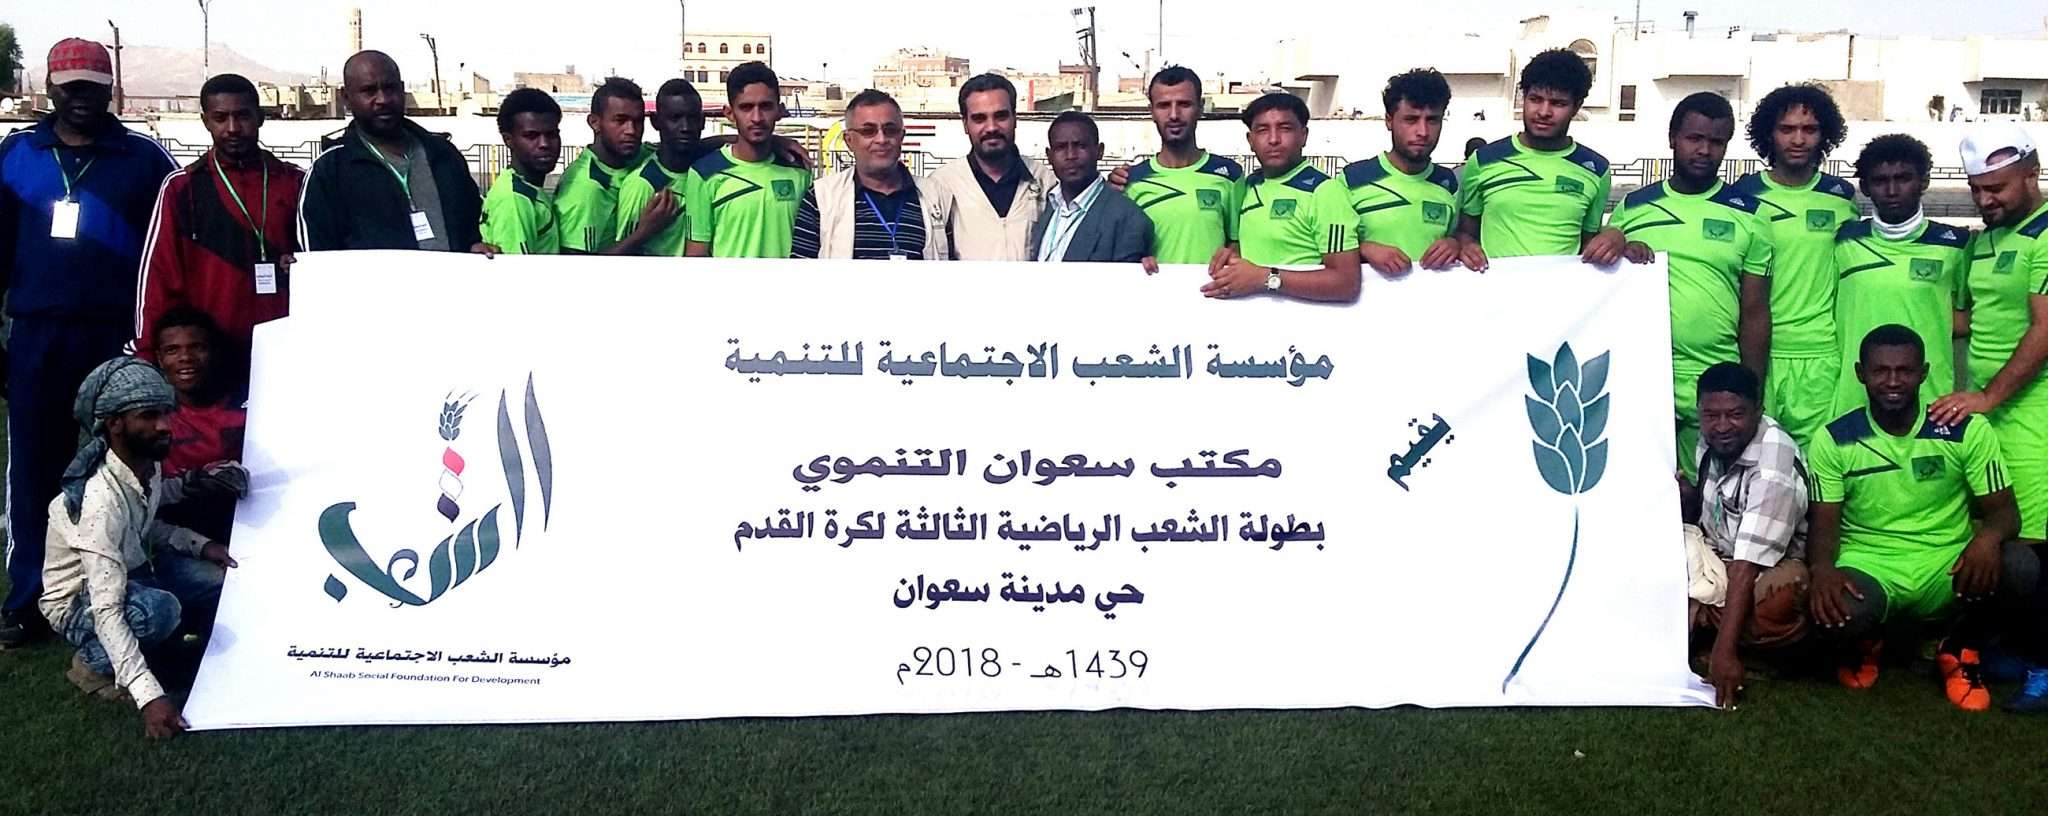 مؤسسة الشعب تدشن بطولة بالستيات الصمود اليمني لكرة القدم في نادي 22 مايو بصنعاء